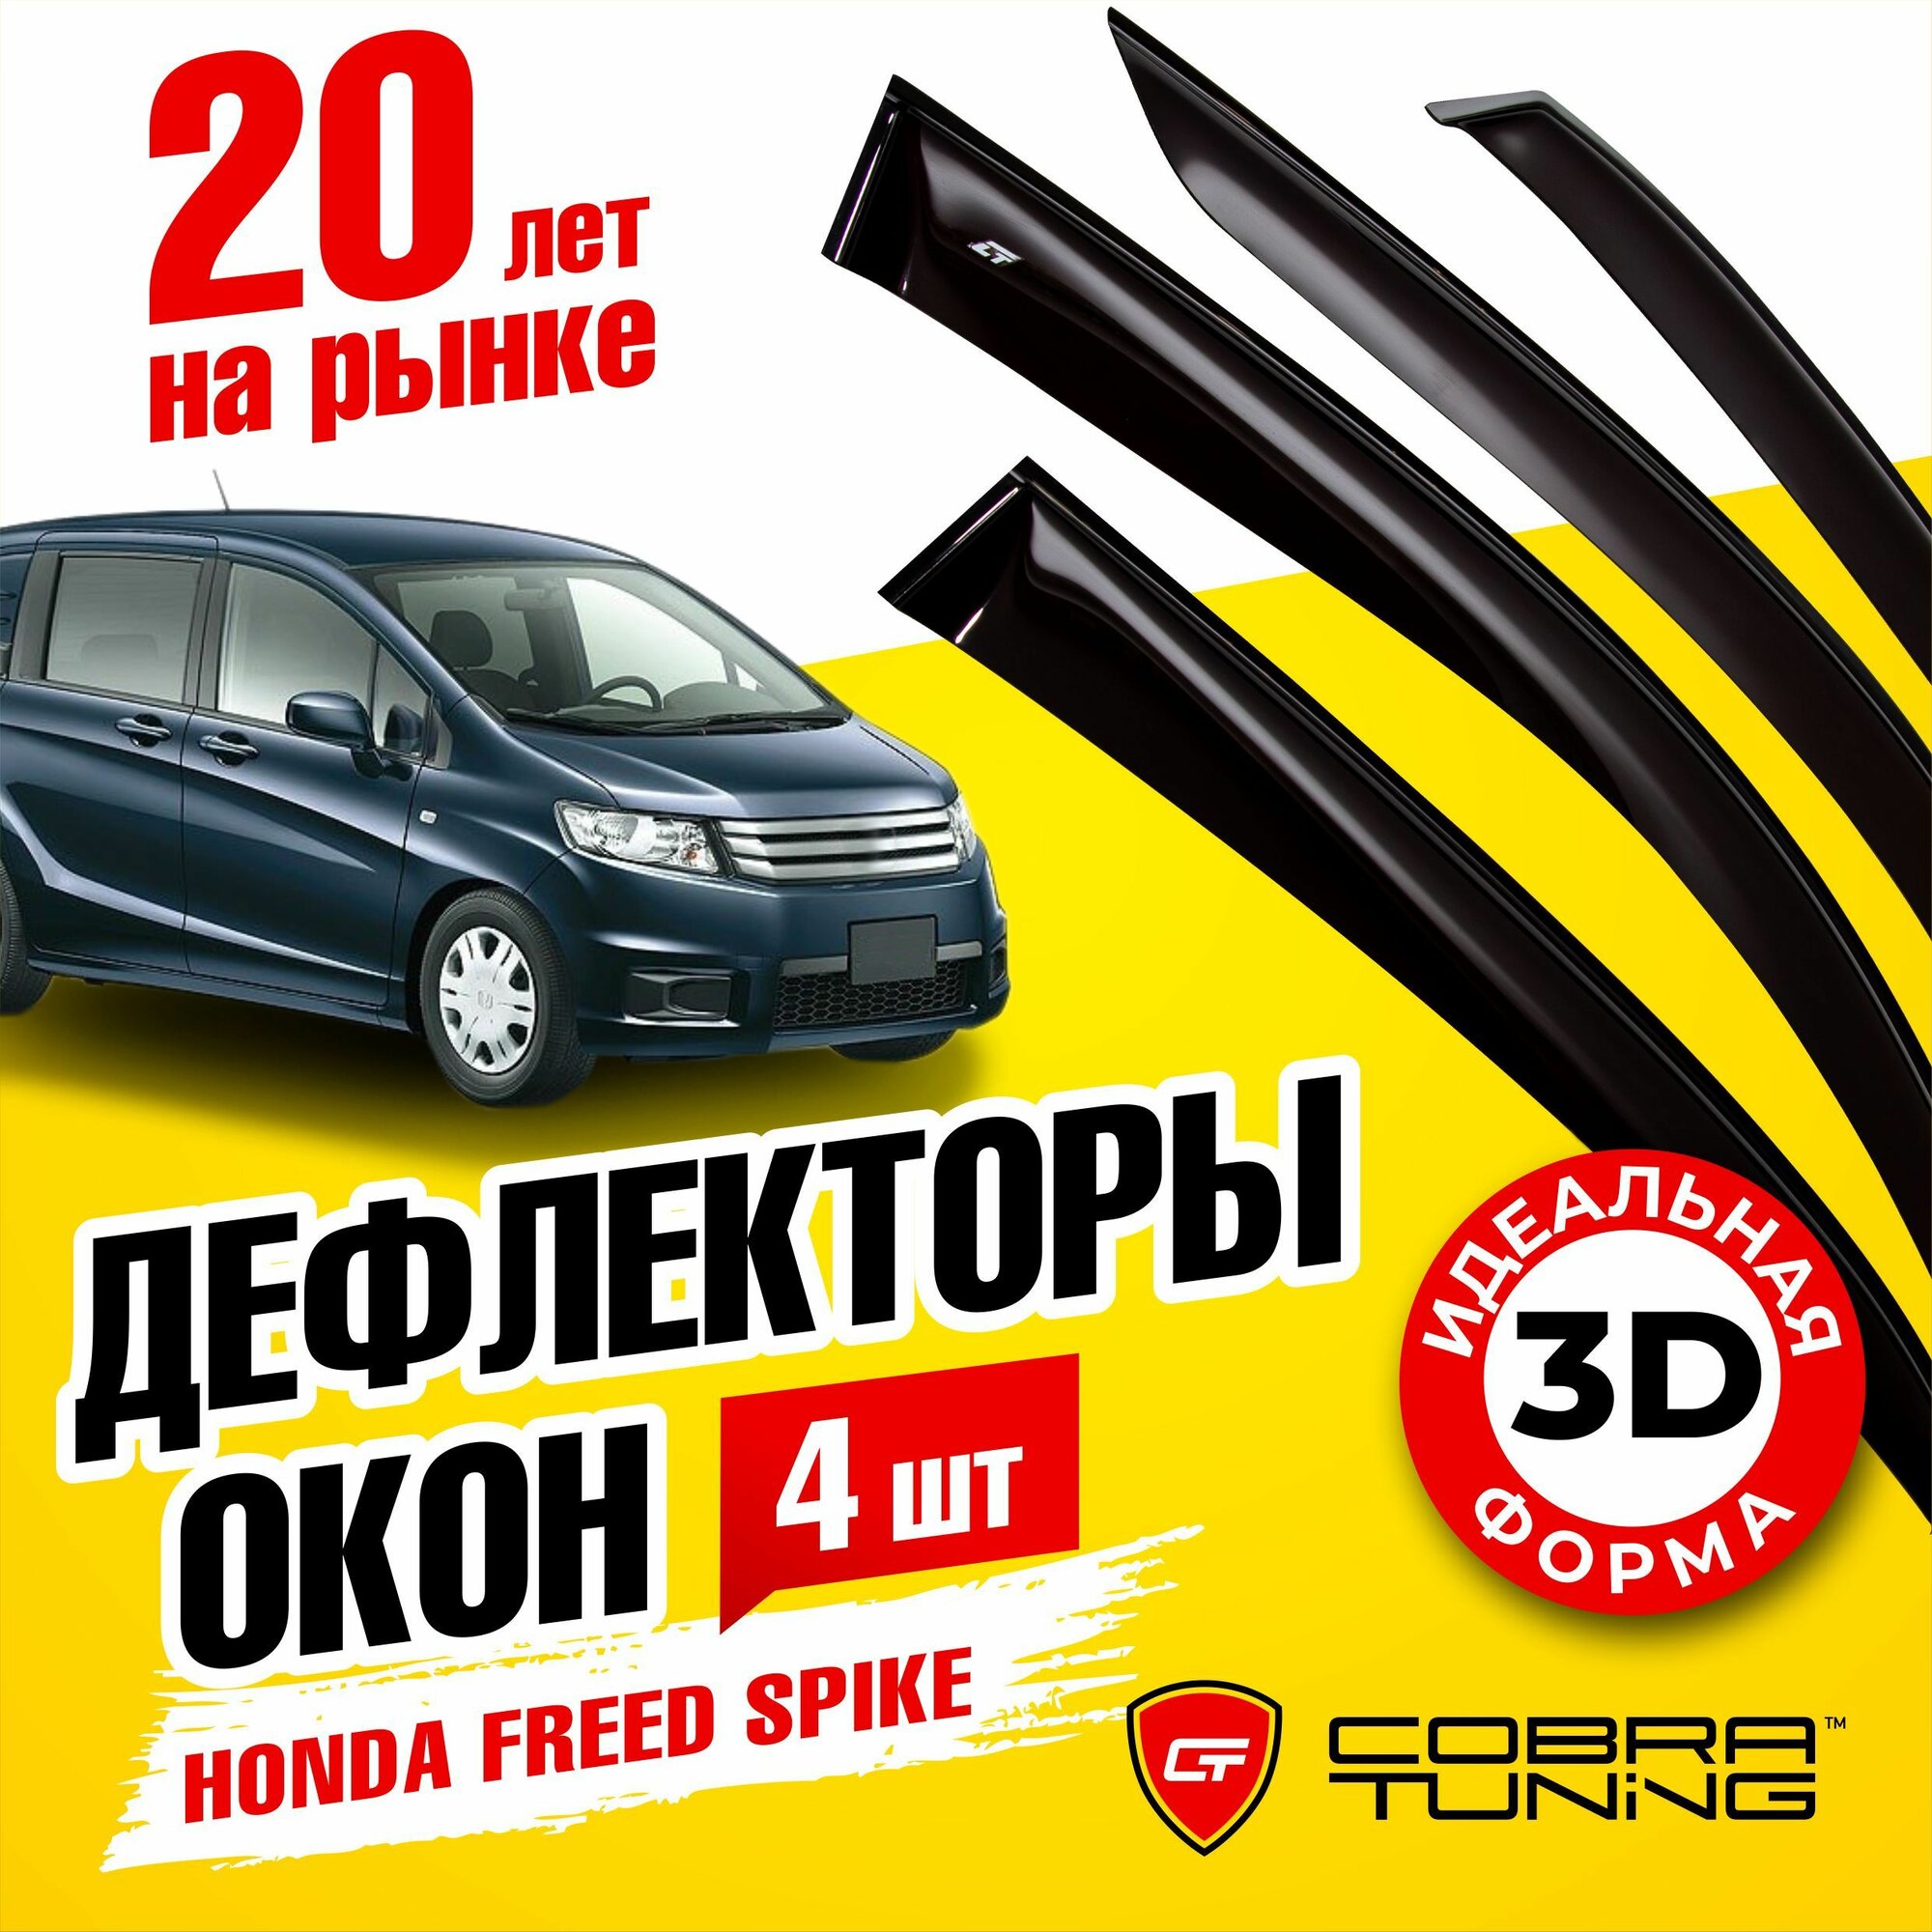 Дефлекторы боковых окон для Honda Freed Spike (Хонда Фрид Спайк) (GB3) 2010-2014, ветровики на двери автомобиля, Cobra Tuning